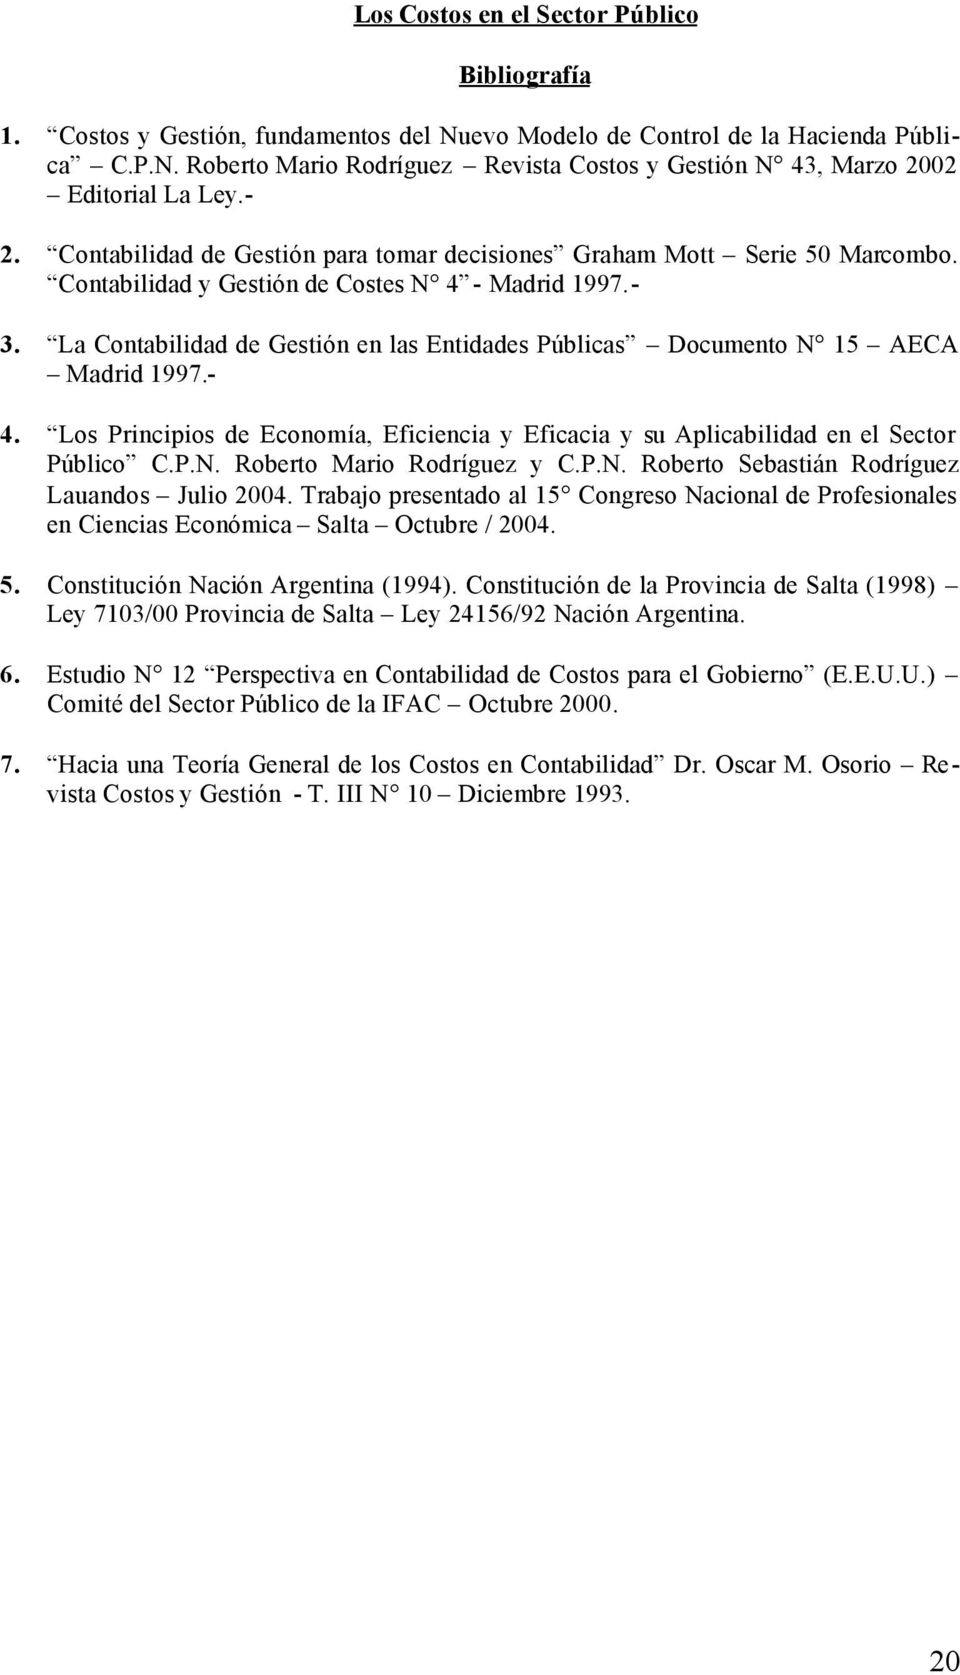 La Contabilidad de Gestión en las Entidades Públicas Documento N 15 AECA Madrid 1997.- 4. Los Principios de Economía, Eficiencia y Eficacia y su Aplicabilidad en el Sector Público C.P.N. Roberto Mario Rodríguez y C.